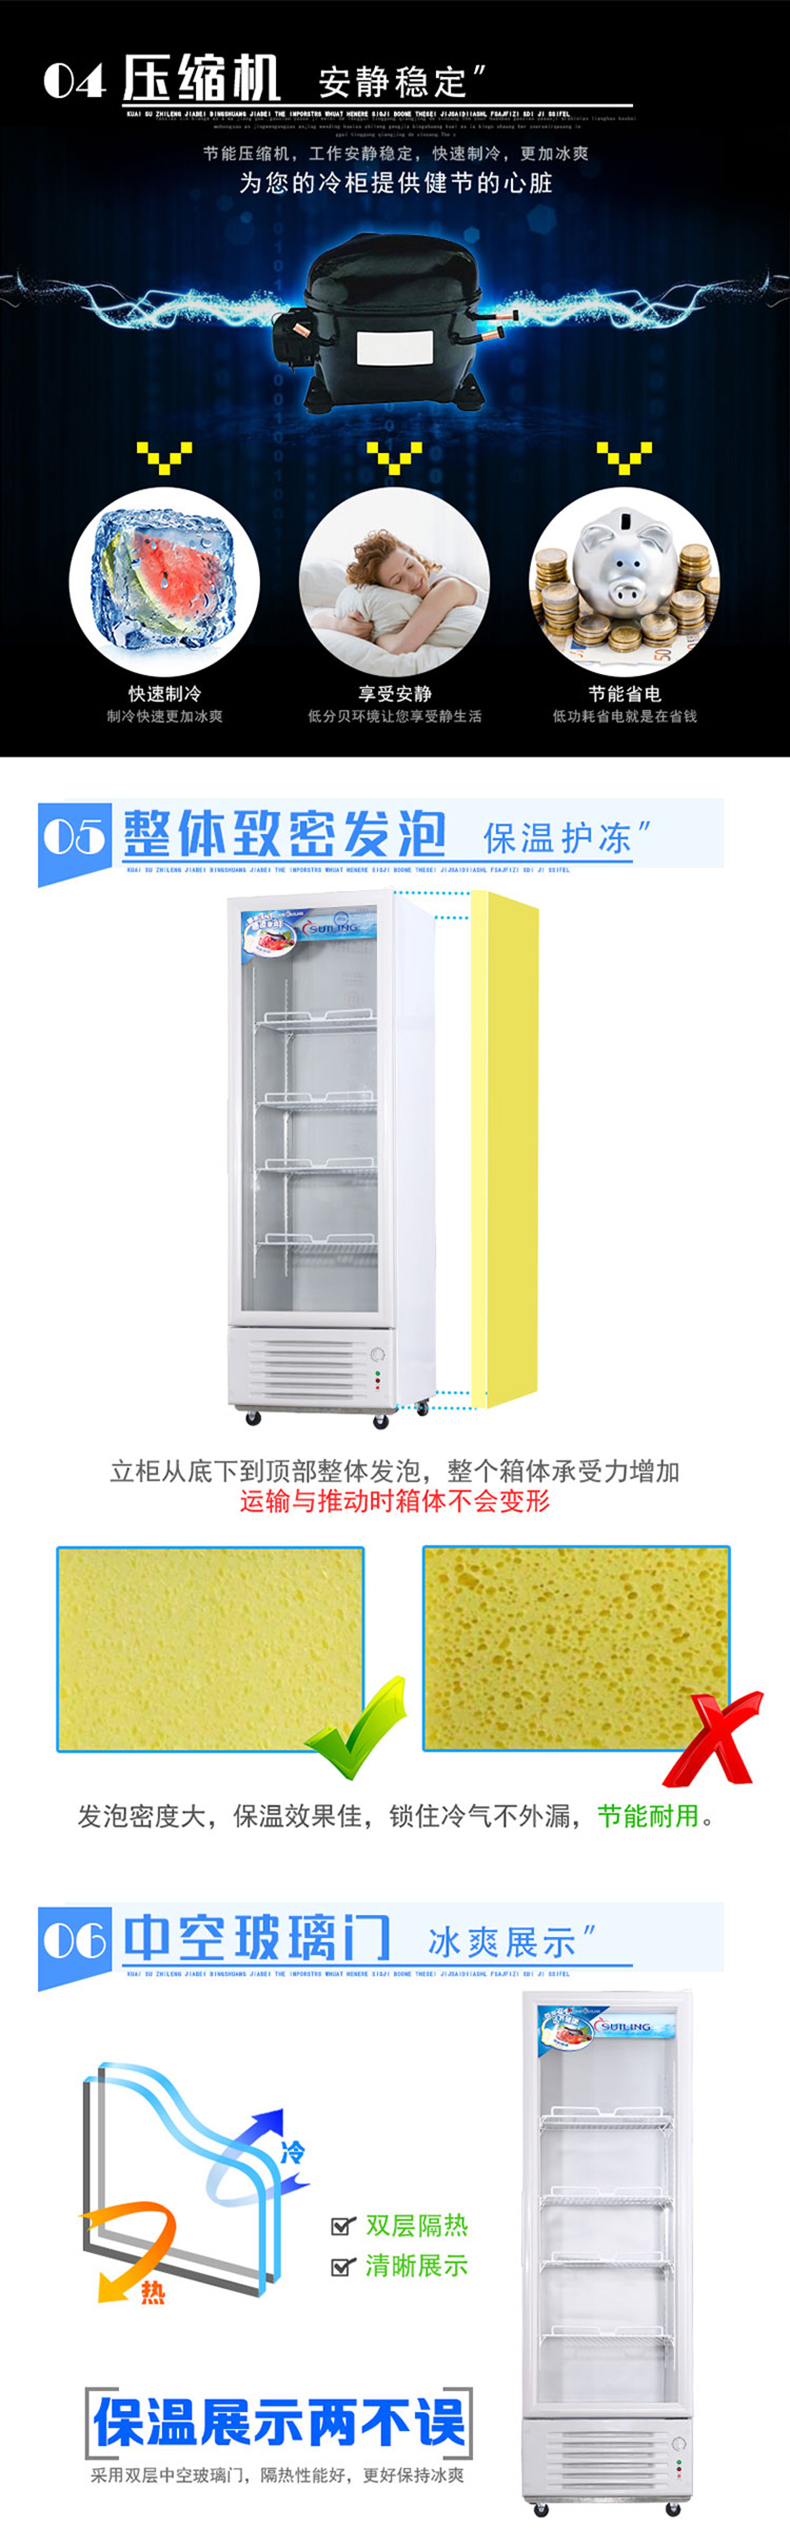 穗凌suiling 商用展示柜 lg4-288立式冰柜 直冷商用冷藏冷柜单门饮料